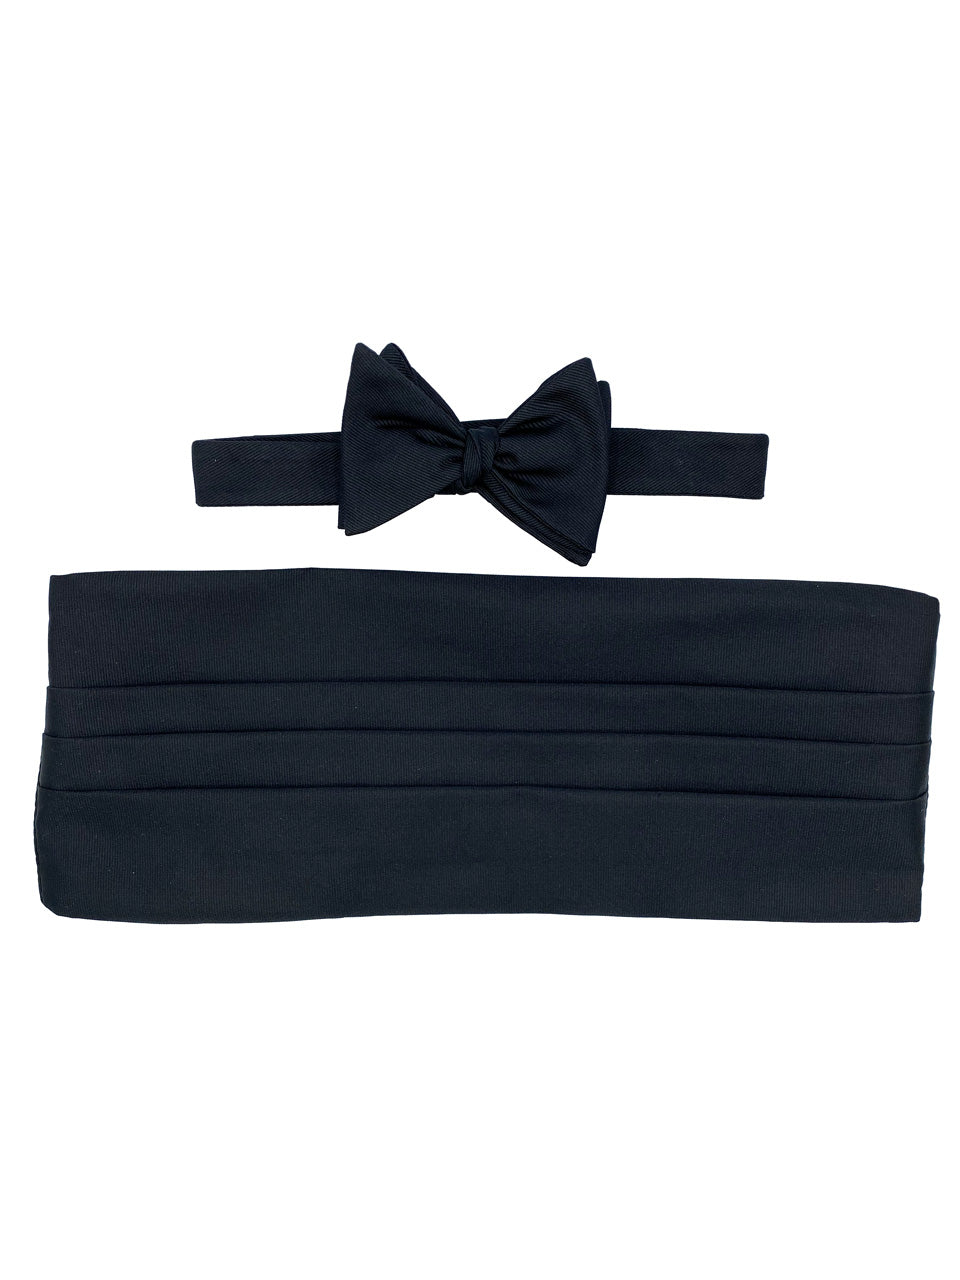 Black Grosgrain Bow Tie & Cummerbund Set